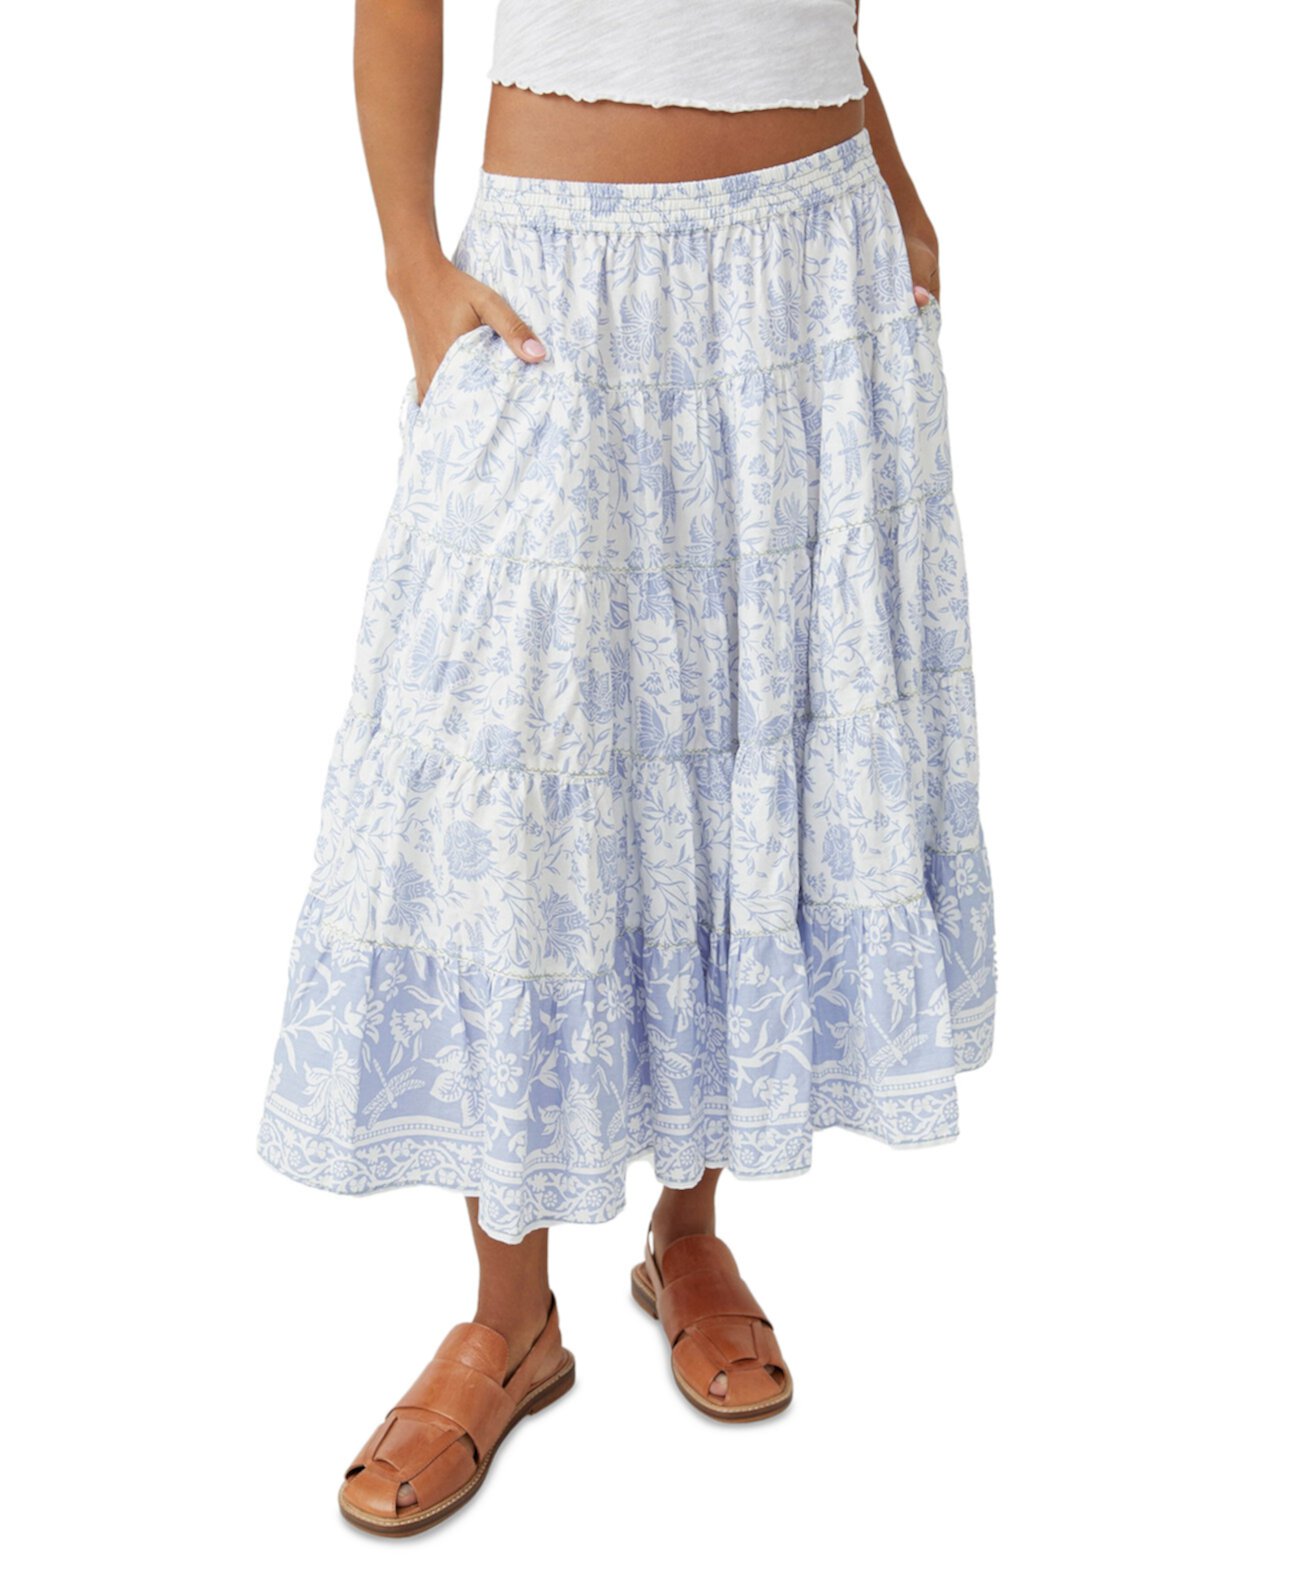 Женская многоярусная юбка-миди с расклешенным силуэтом и принтом Free People